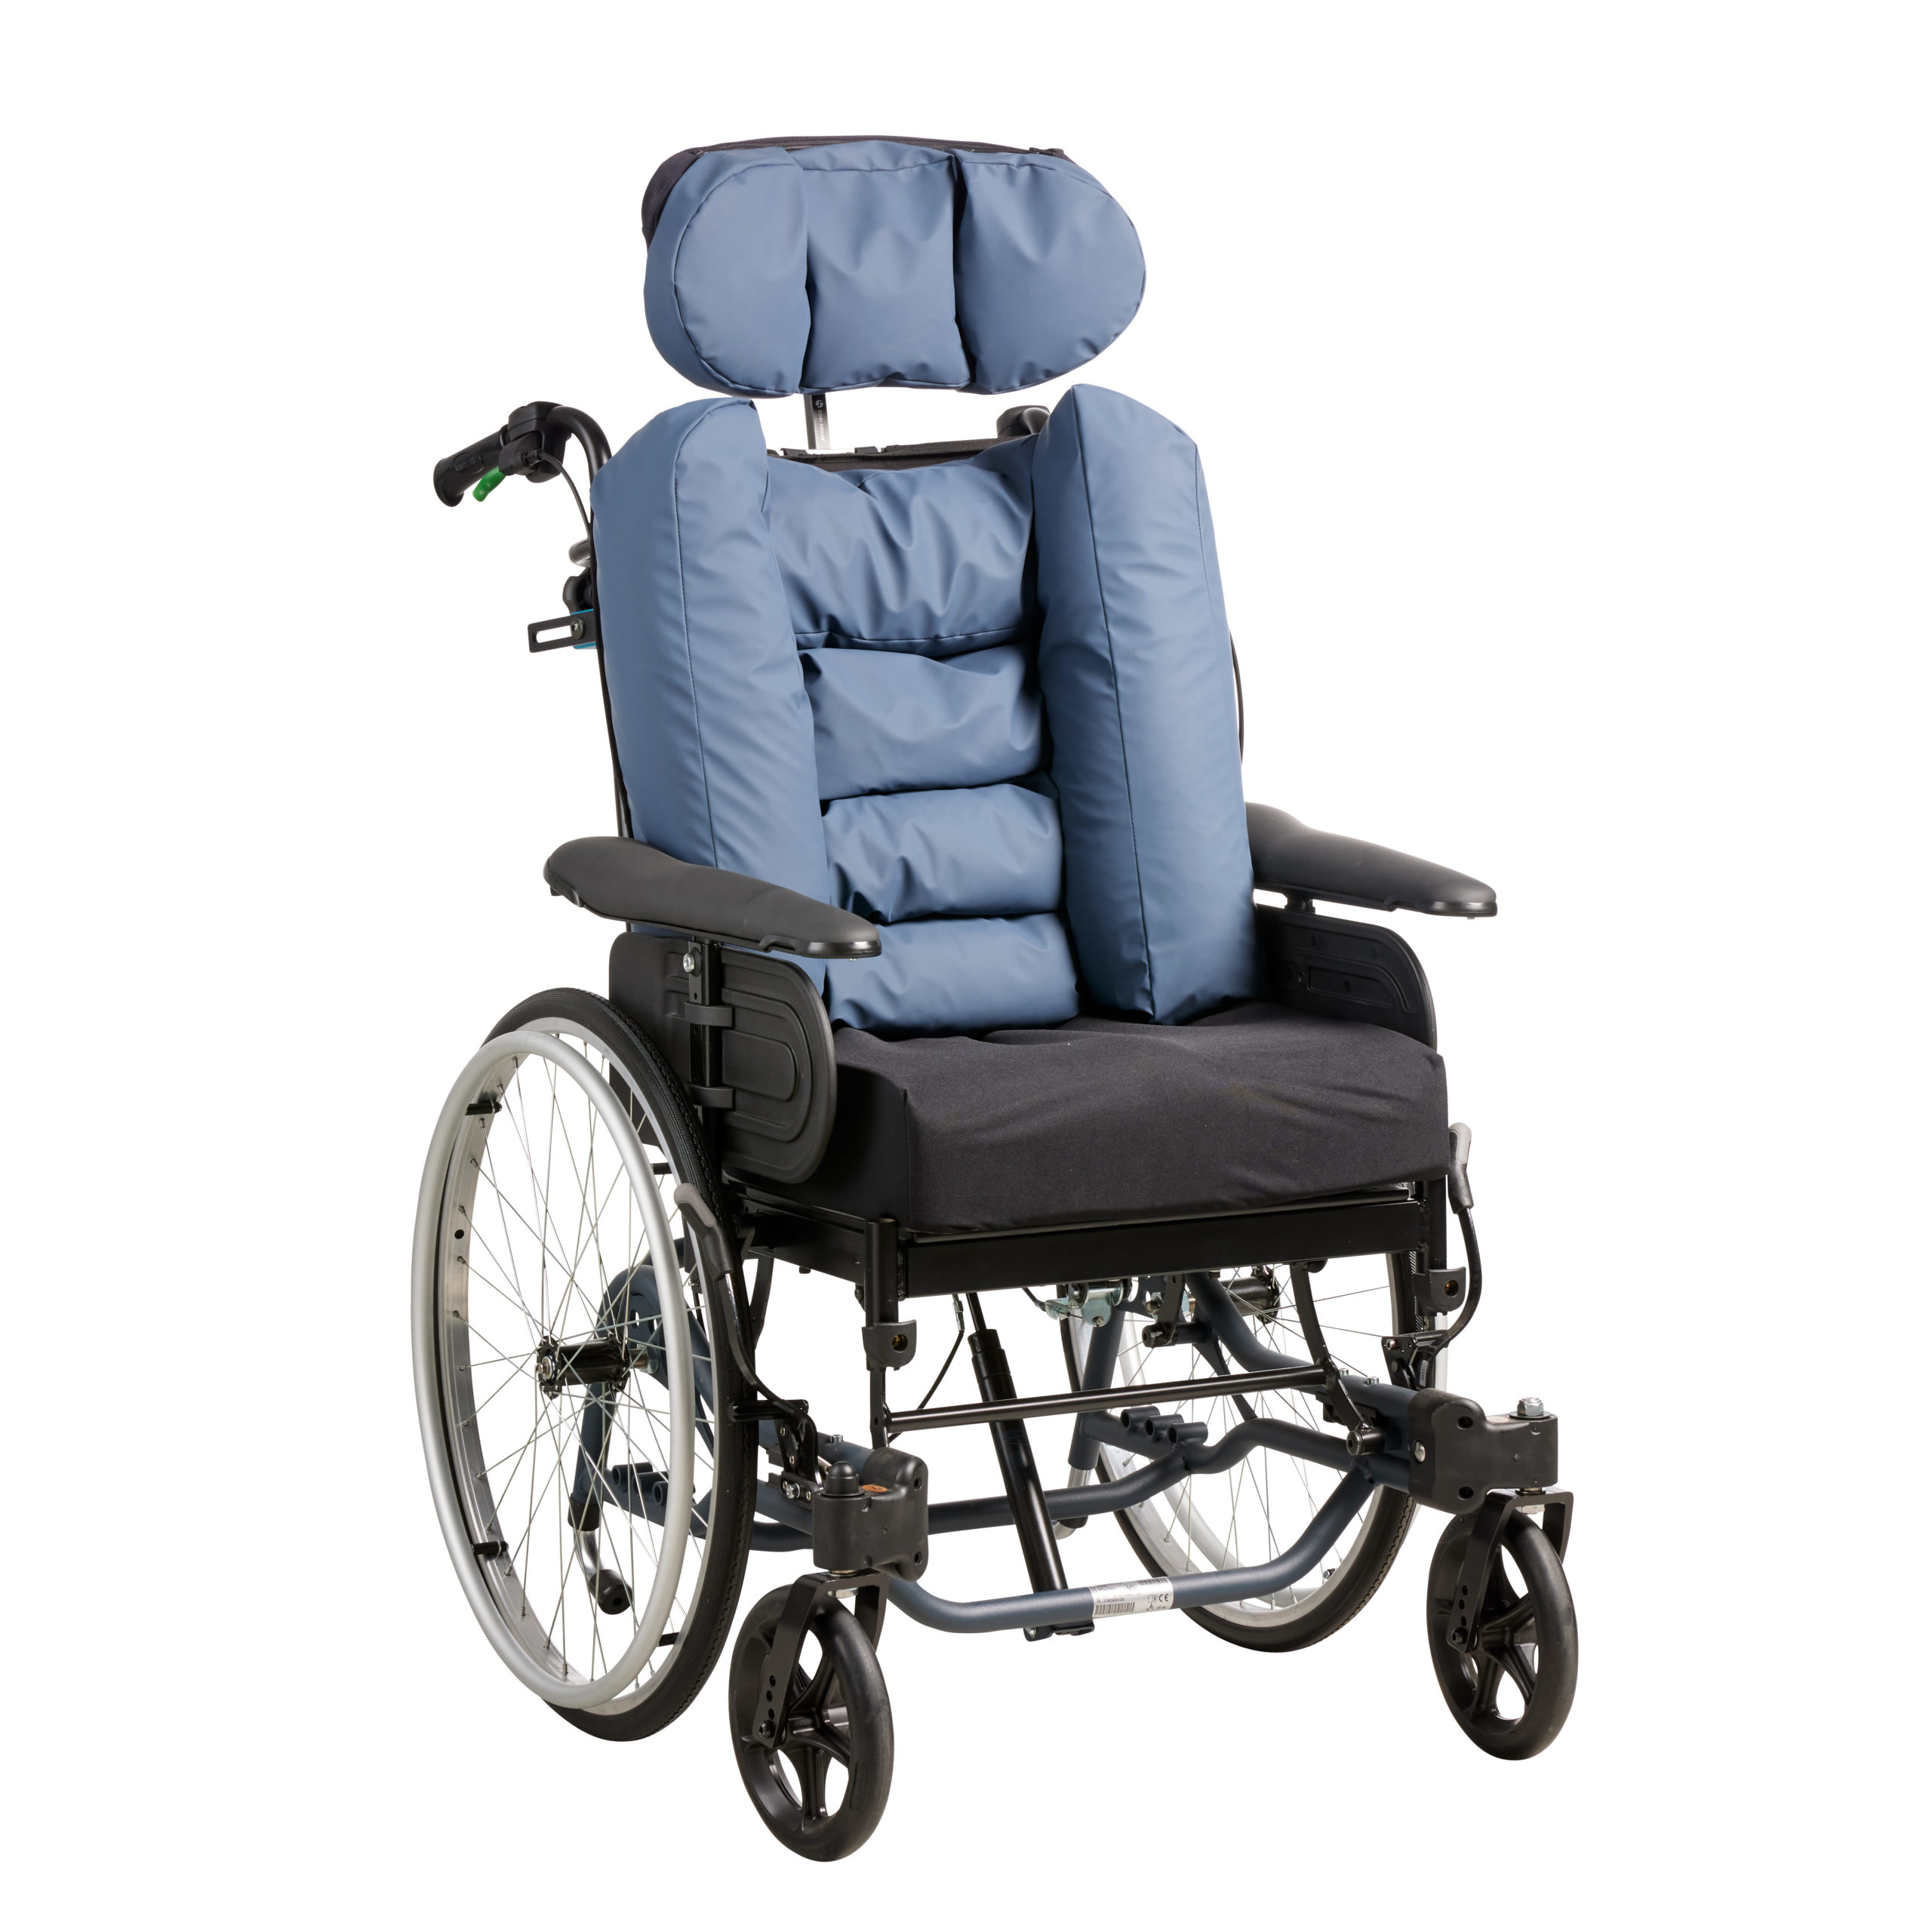 Kamille ryg til mange typer af kørestole, elektriske som manuelle